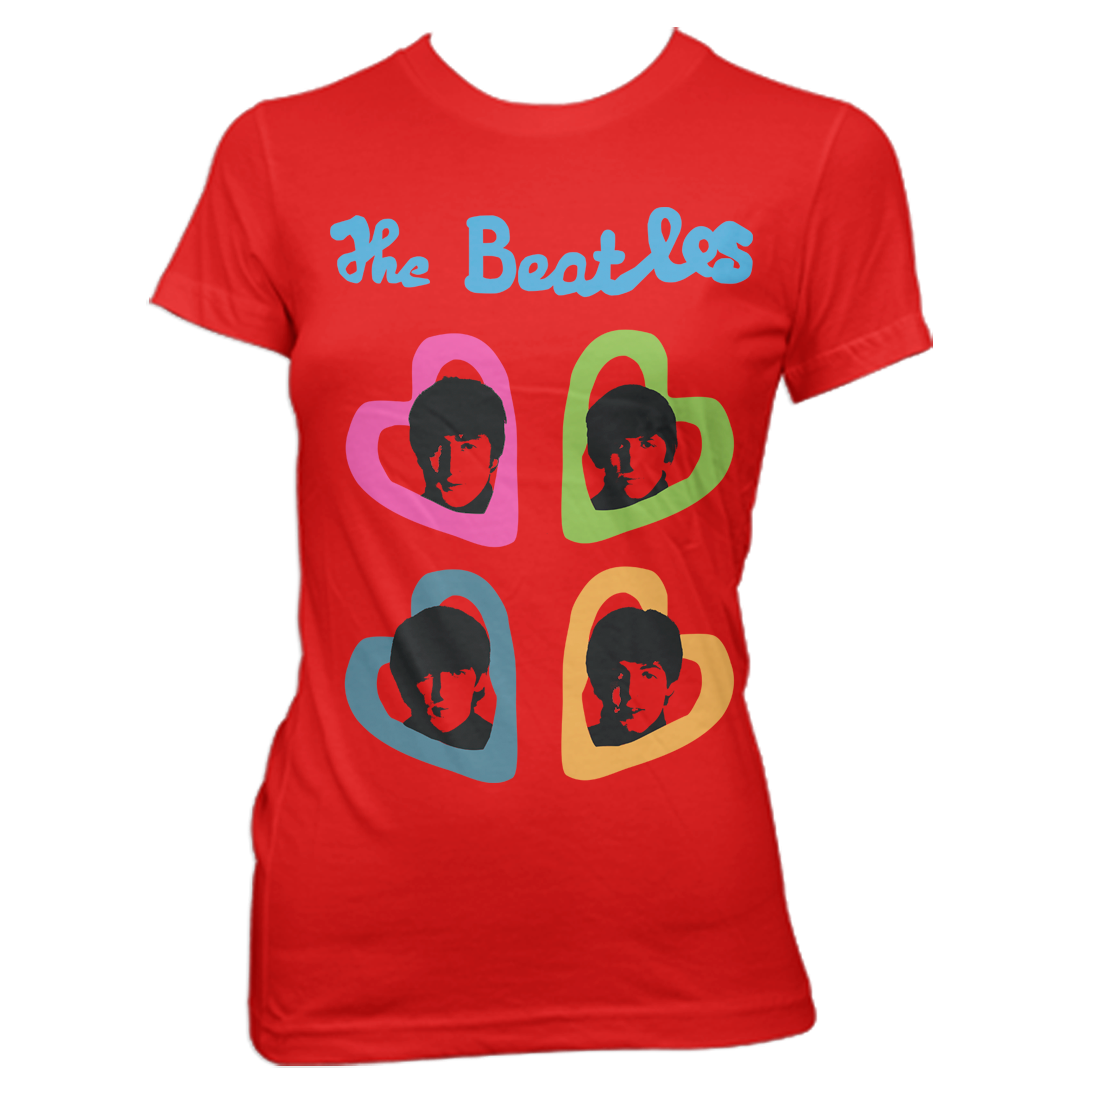 The Beatles - Women's Heart T-Shirt